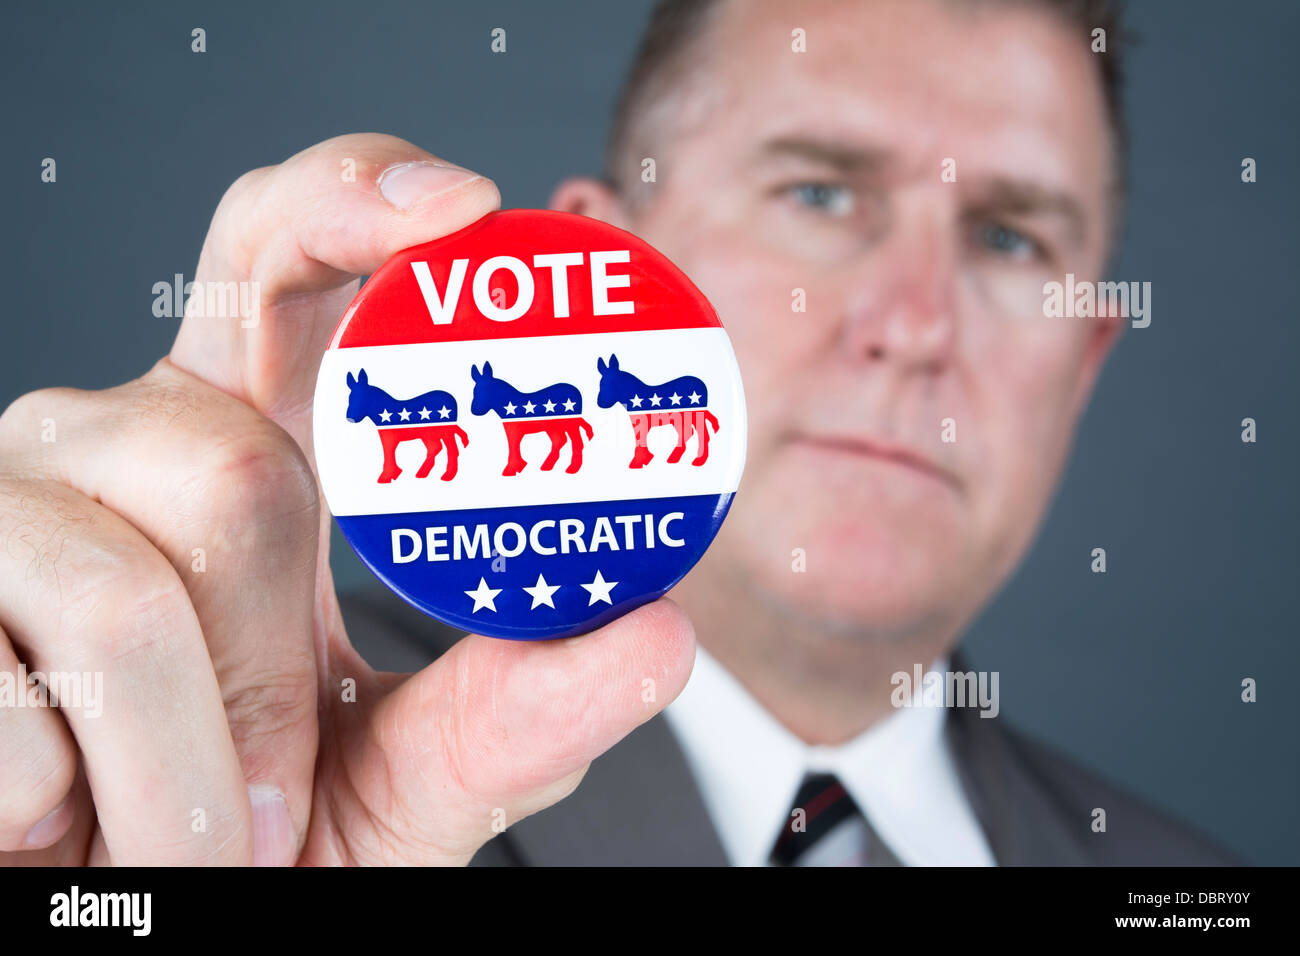 Ein Politiker hält eine demokratische Abstimmung Abzeichen Förderung seiner Pundants zu stimmen. Stockfoto